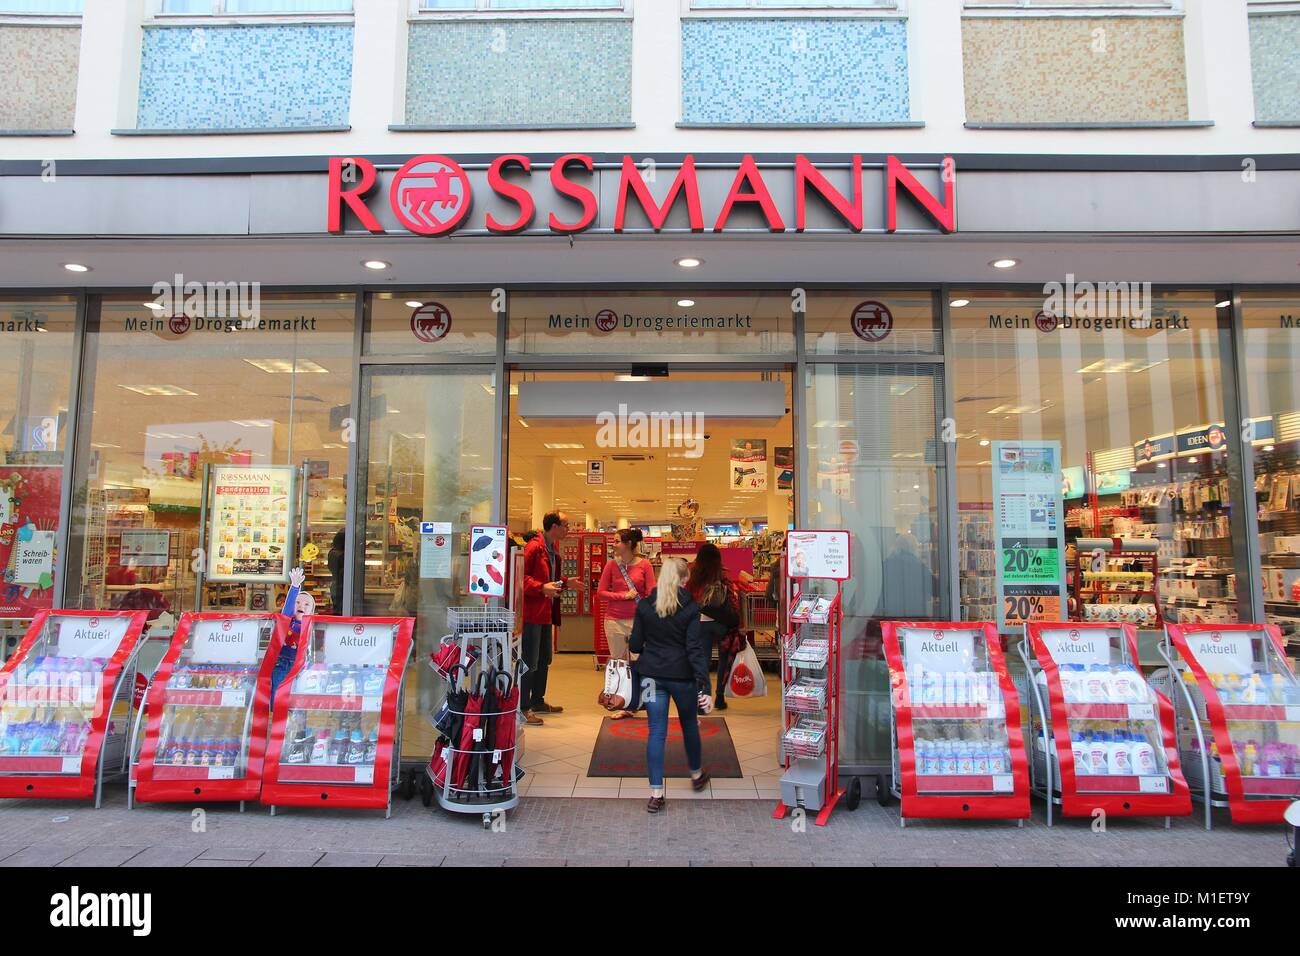 A visit to Rossmann